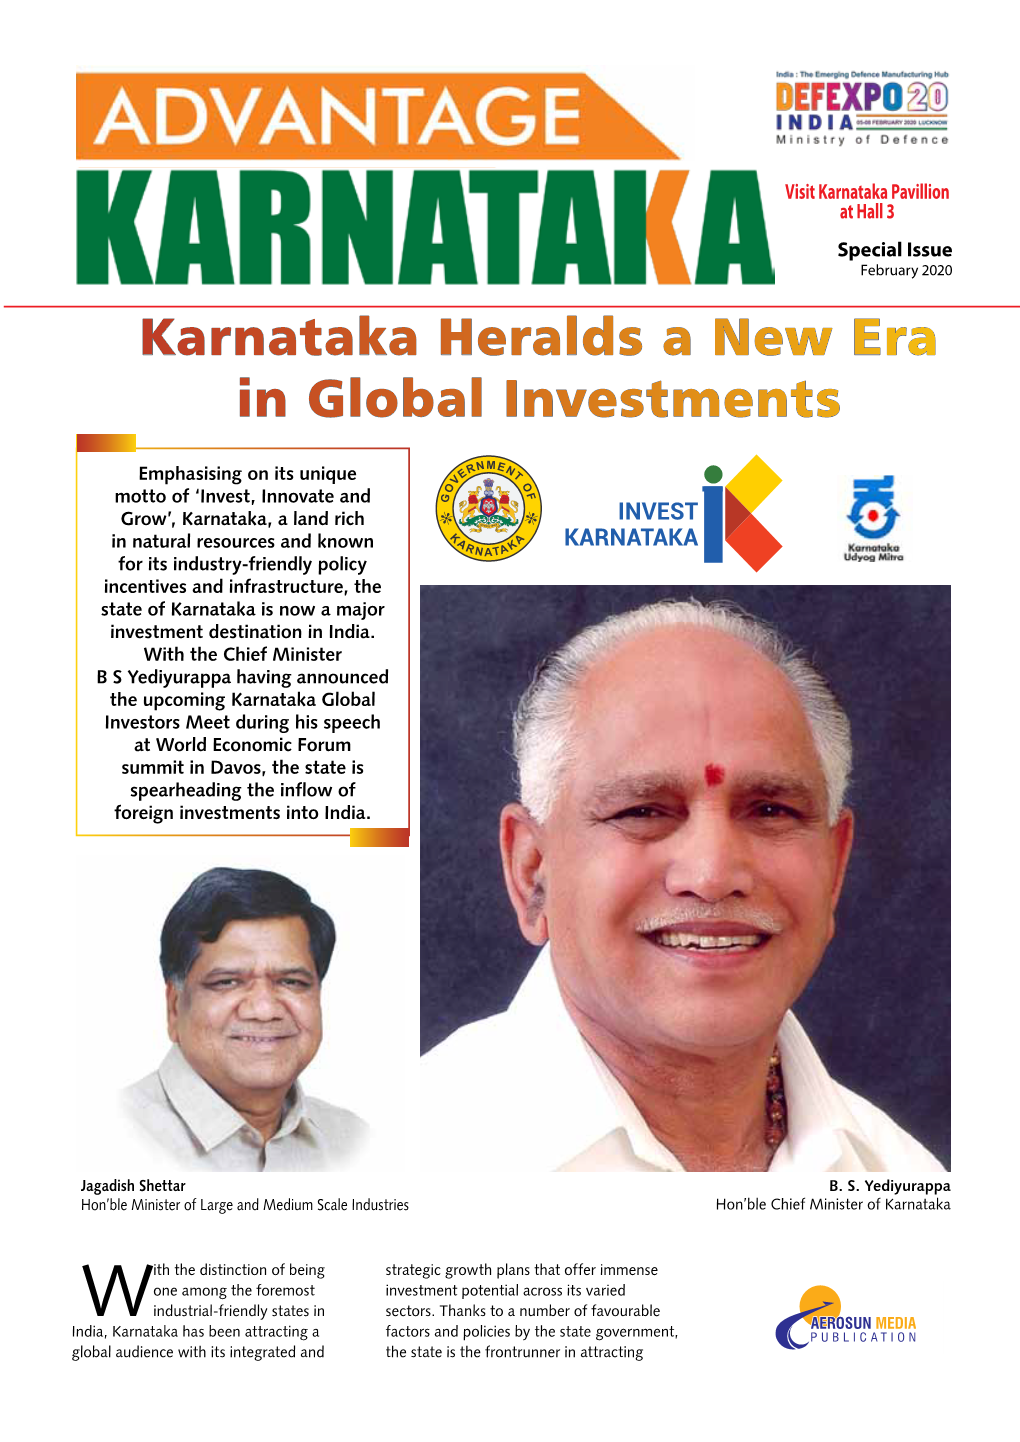 Karnataka Heralds a New Era in Global Investments